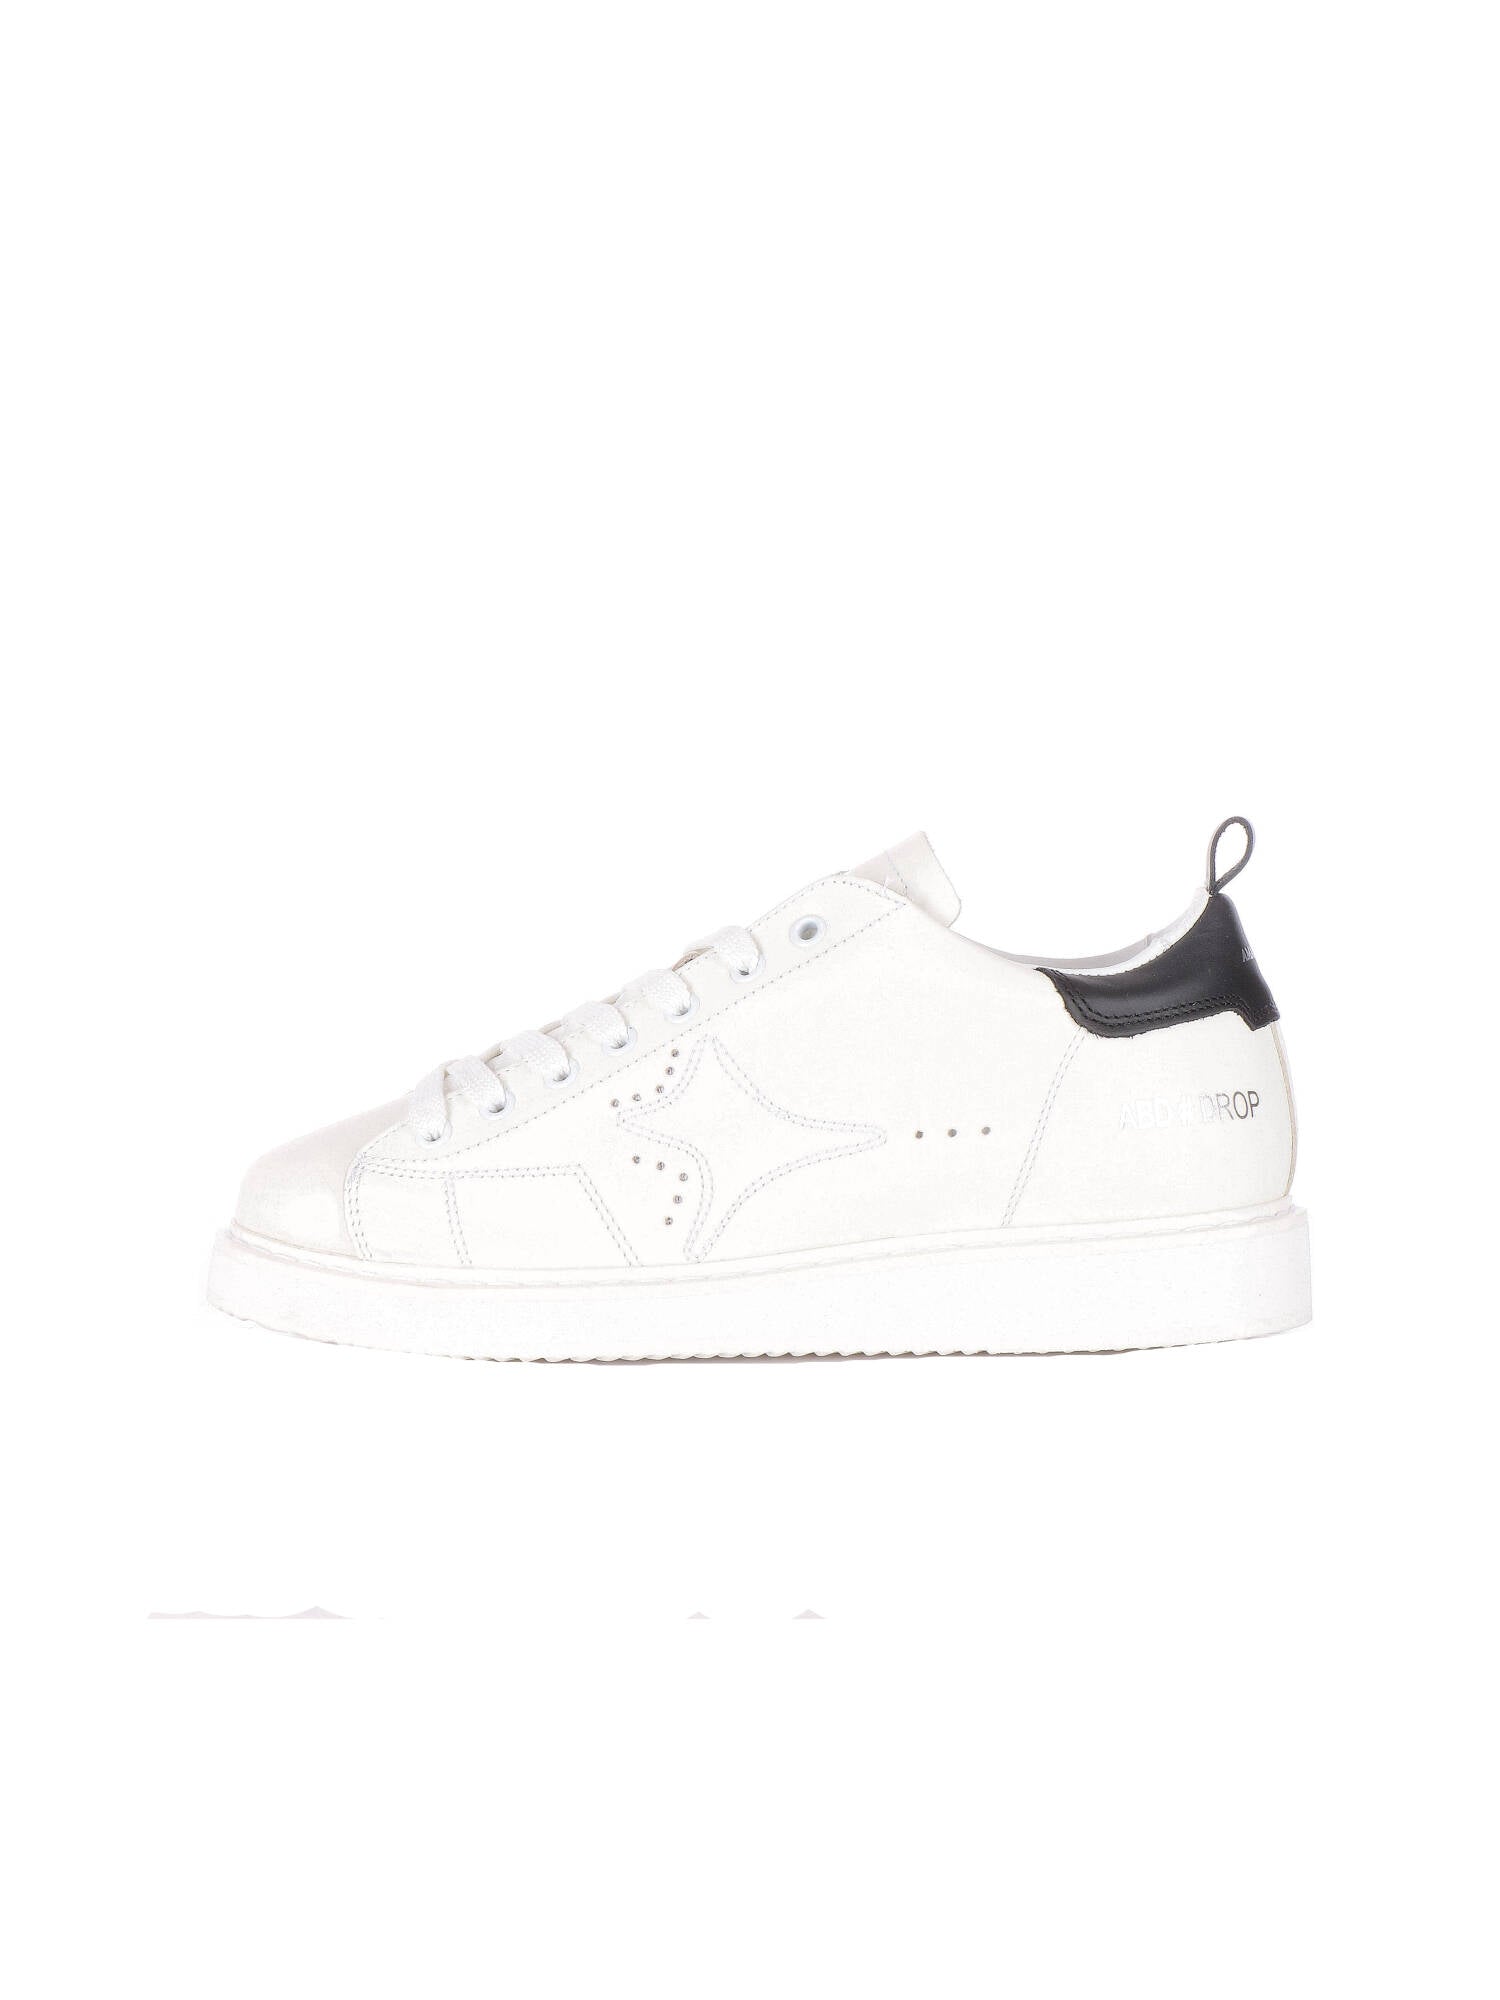 Ama-brand uomo sneakers bianco DROP 2539